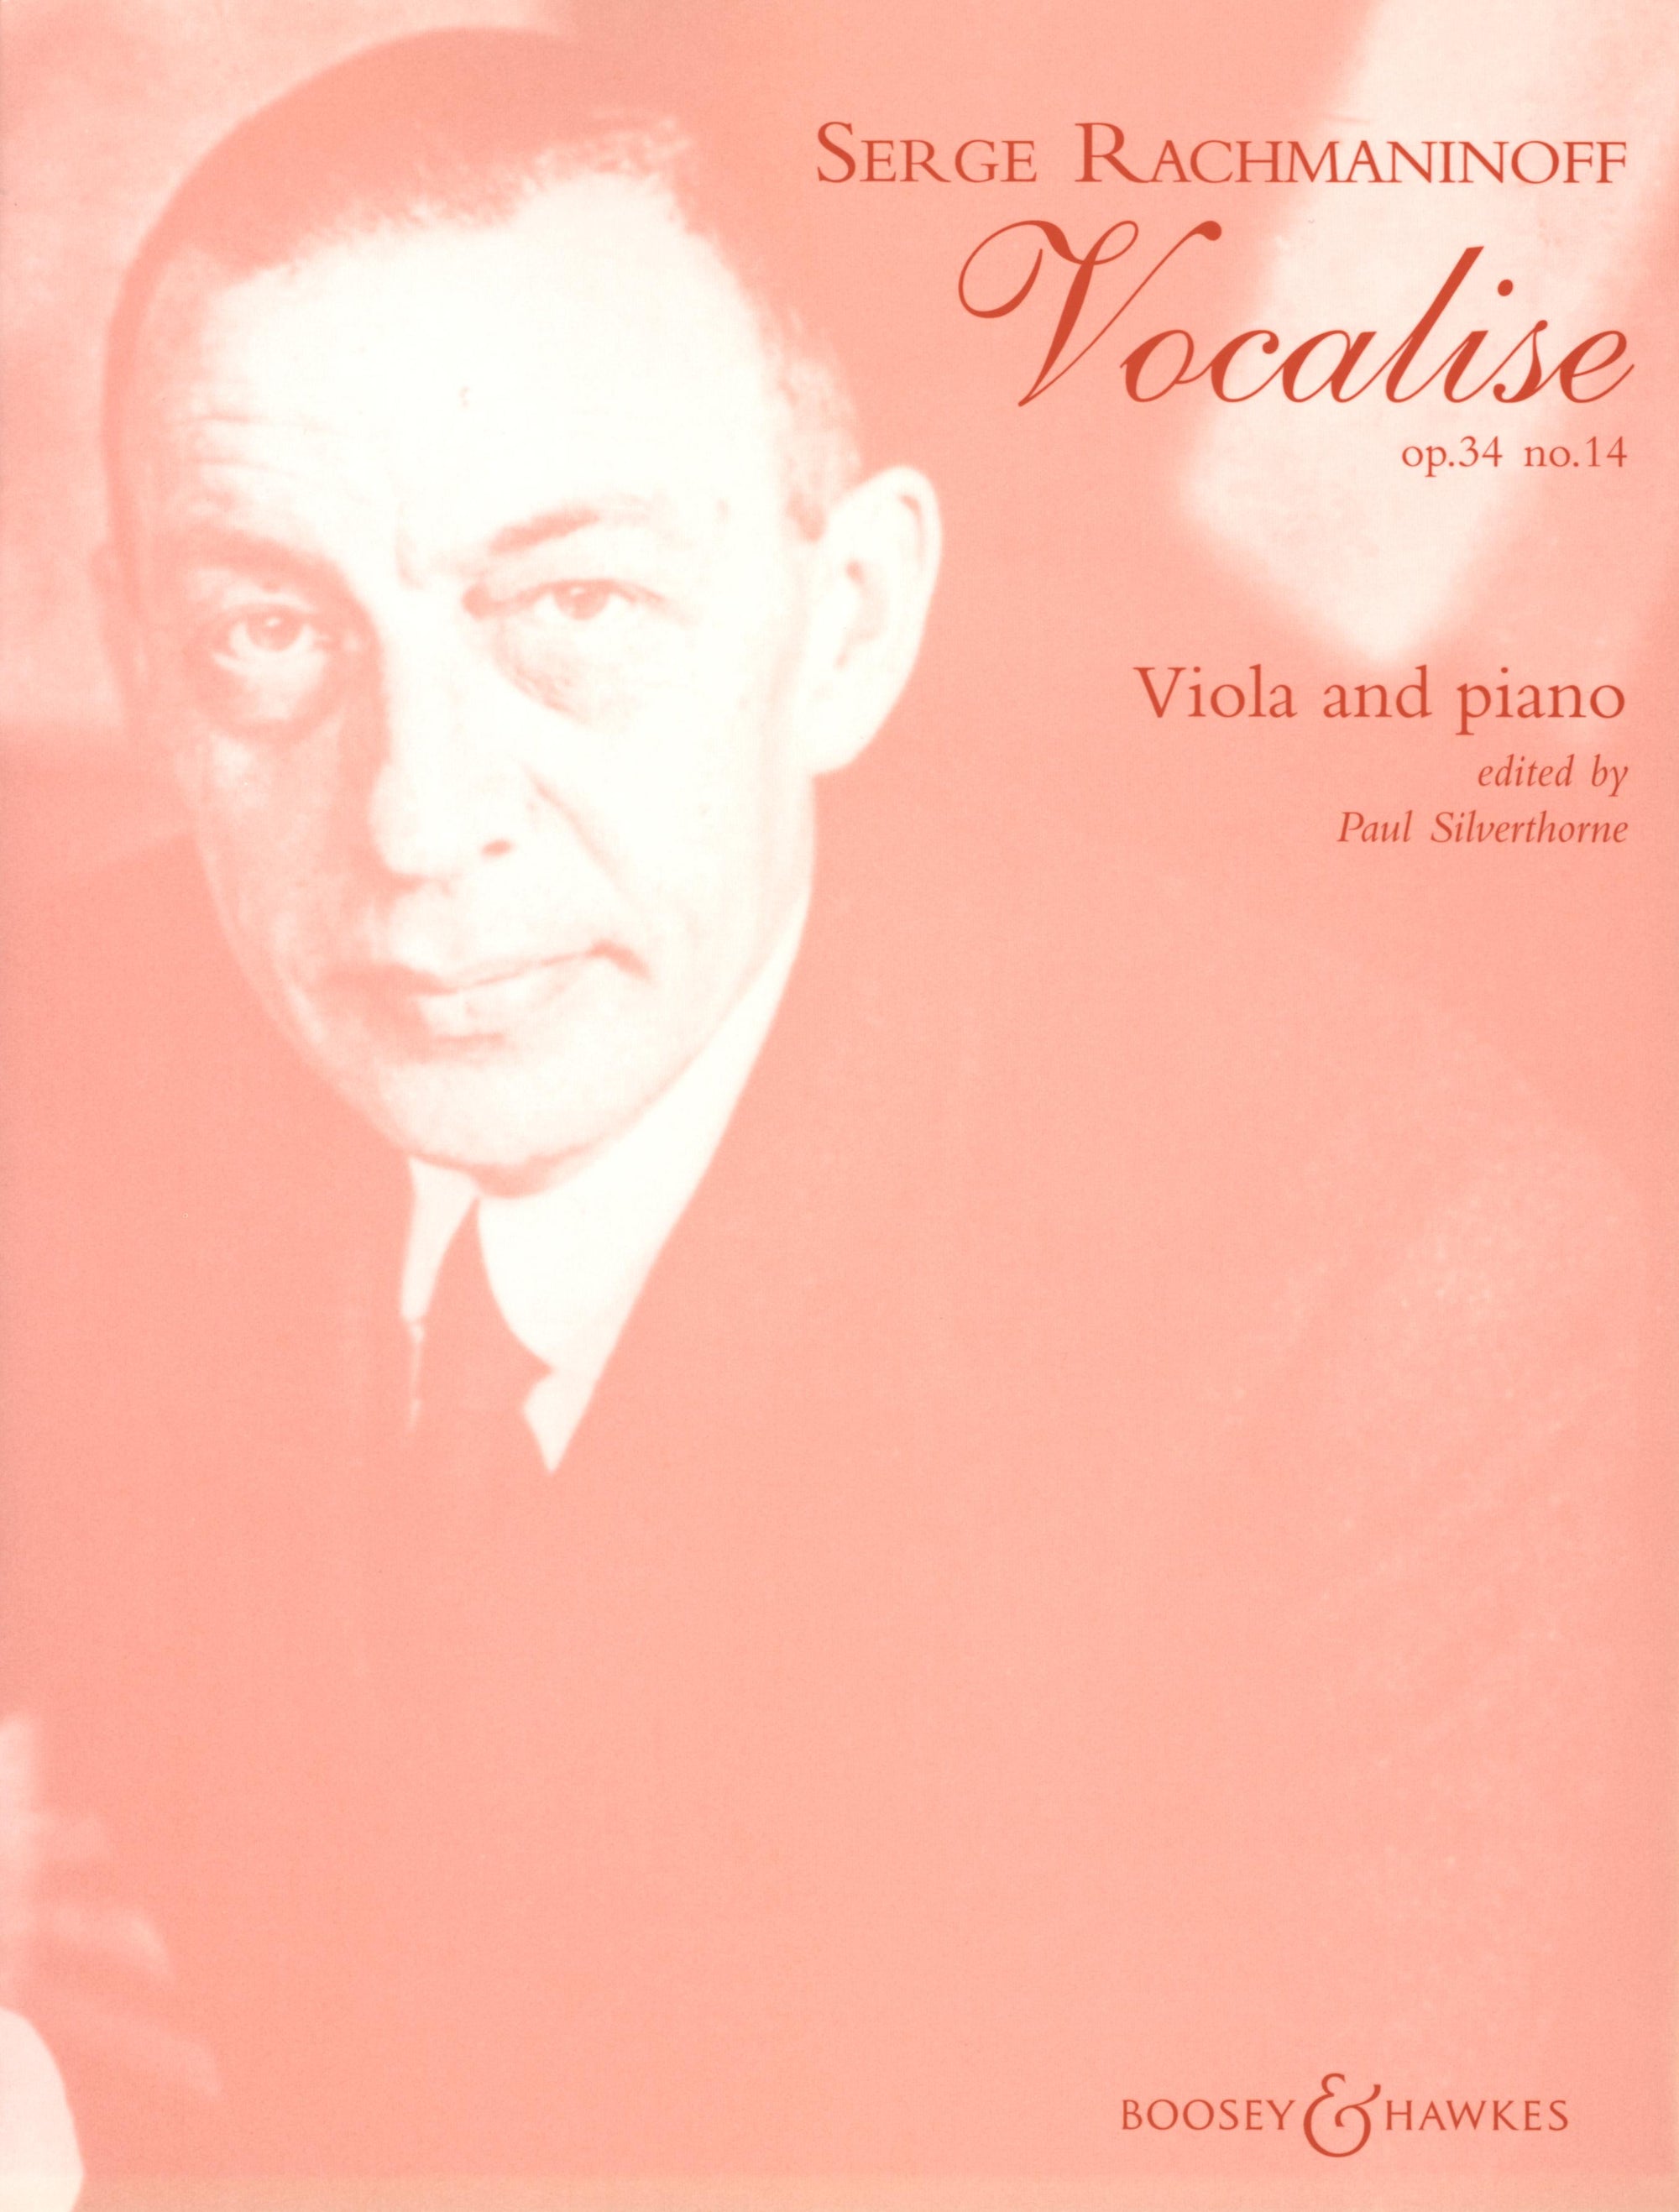 Rachmaninoff: Vocalise, Op. 34, No. 14 (viola & piano)